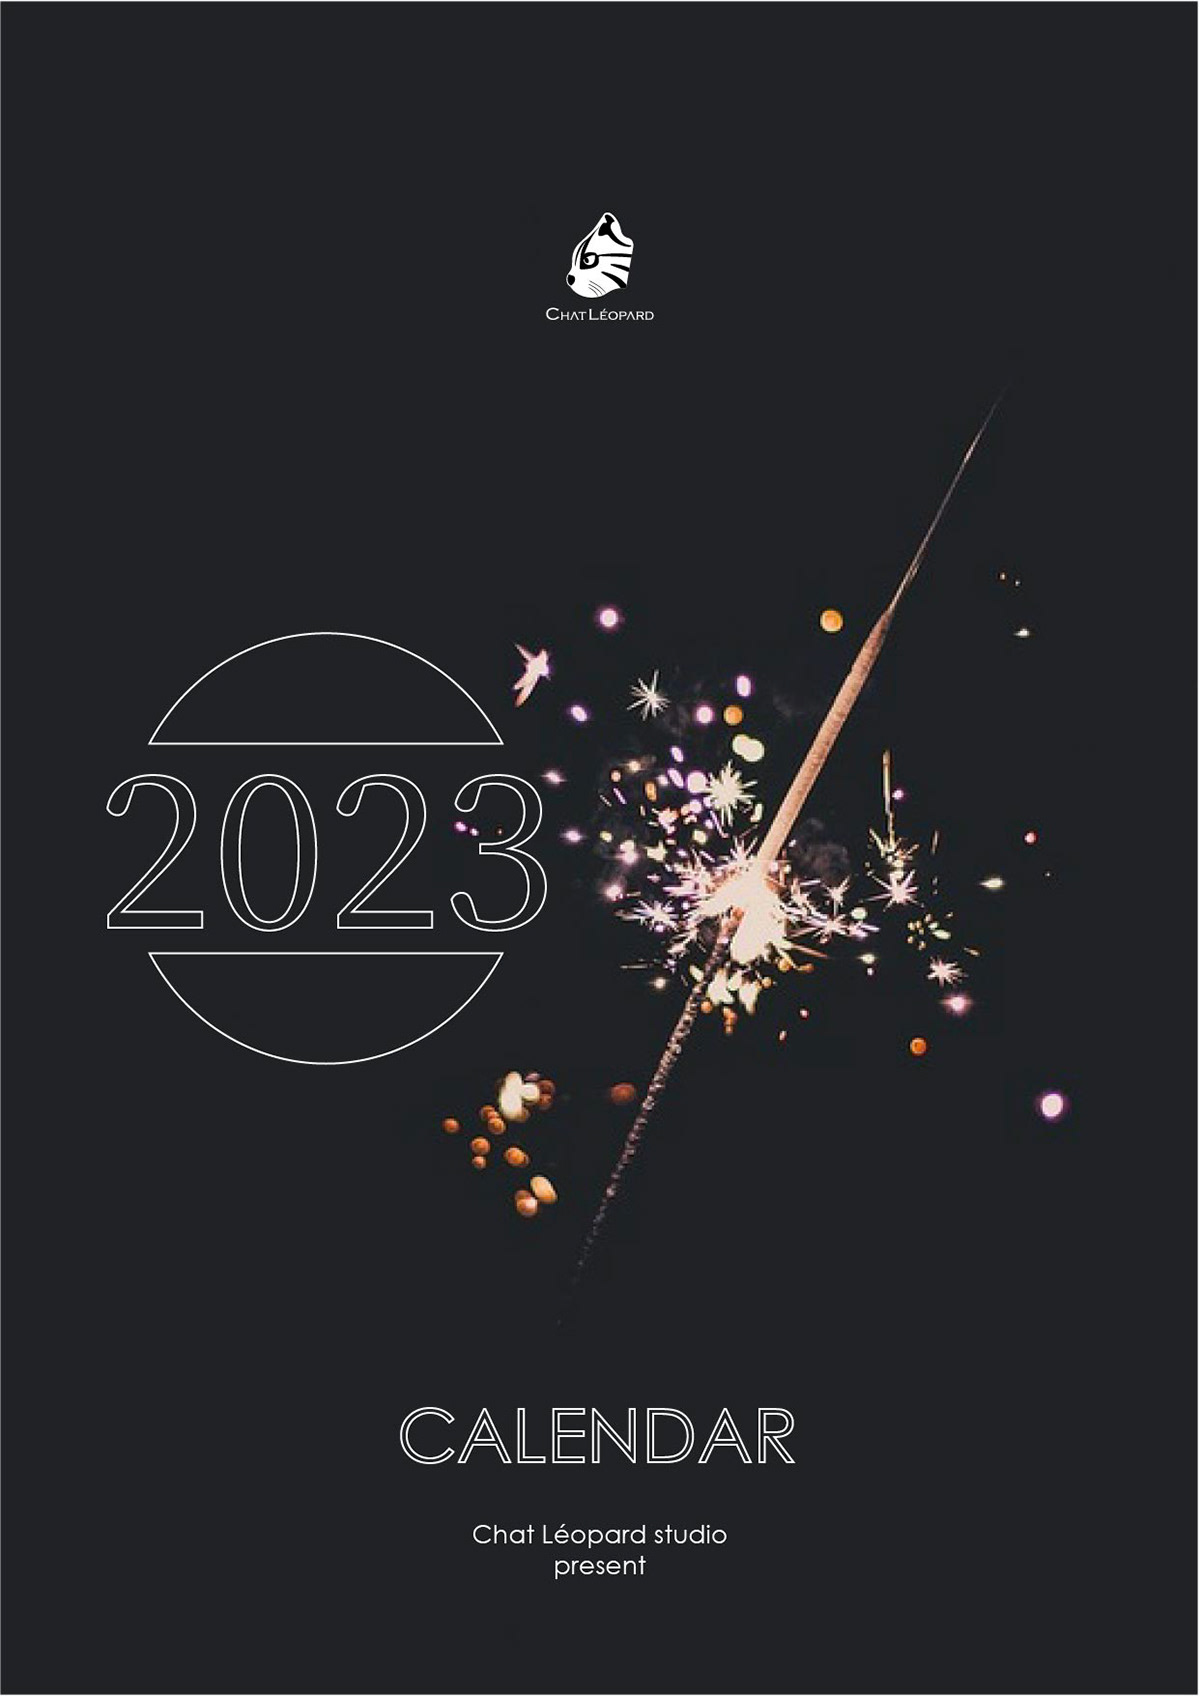 CALENDER 2023 Calender Design kalender 2023 Visuelle Kommunikation kalender design Phorography scenary Visual Communication